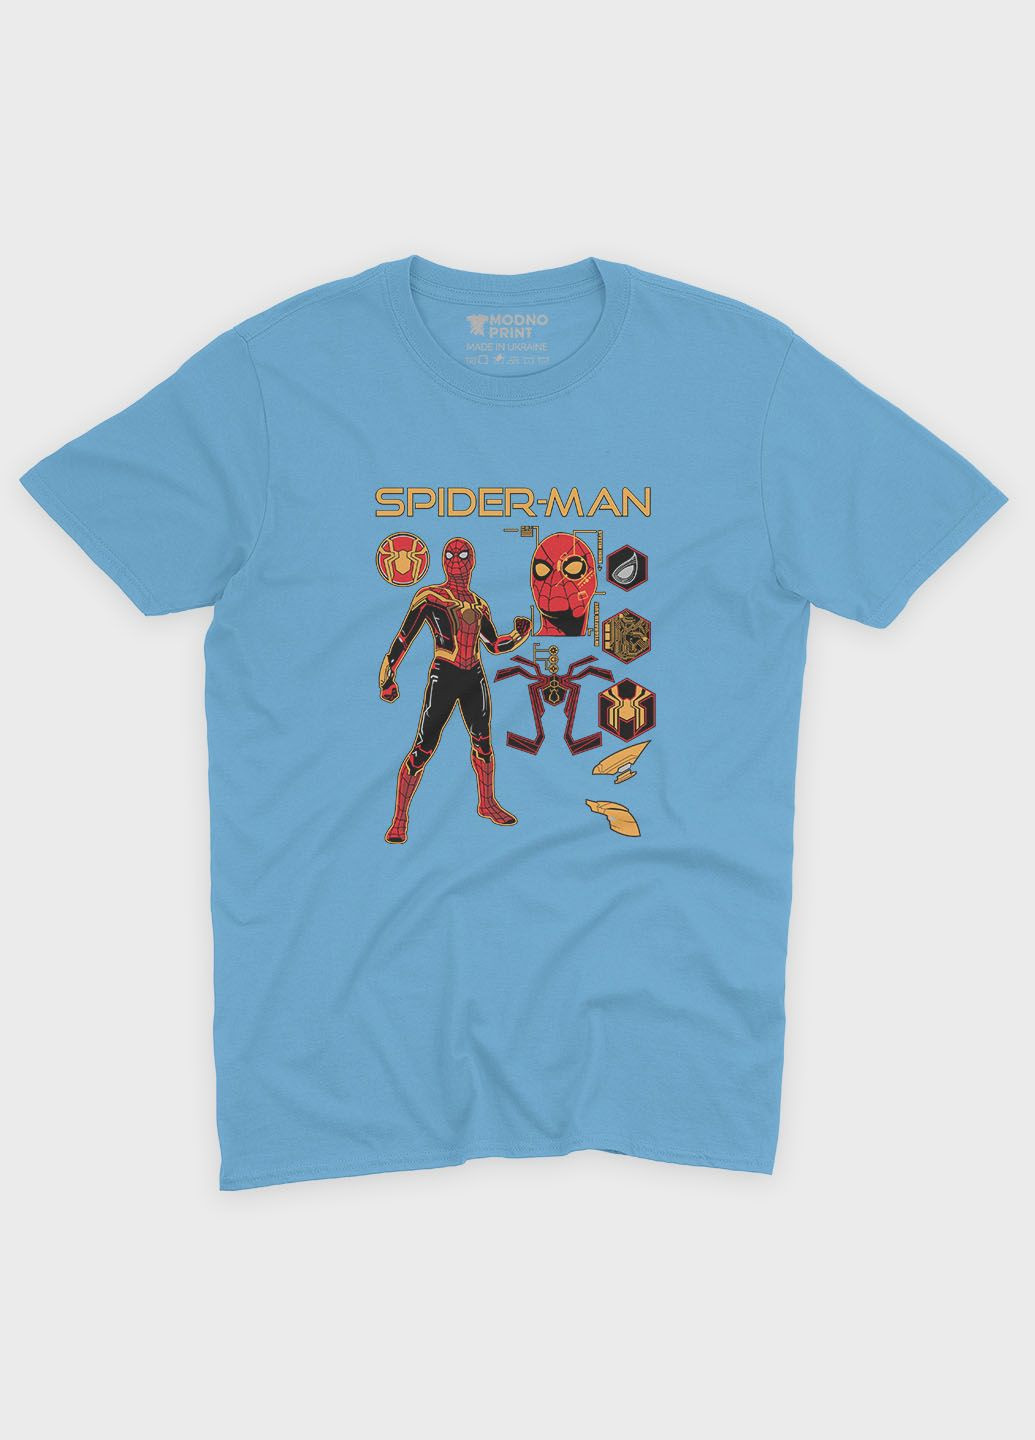 Голубая демисезонная футболка для девочки с принтом супергероя - человек-паук (ts001-1-lbl-006-014-095-g) Modno